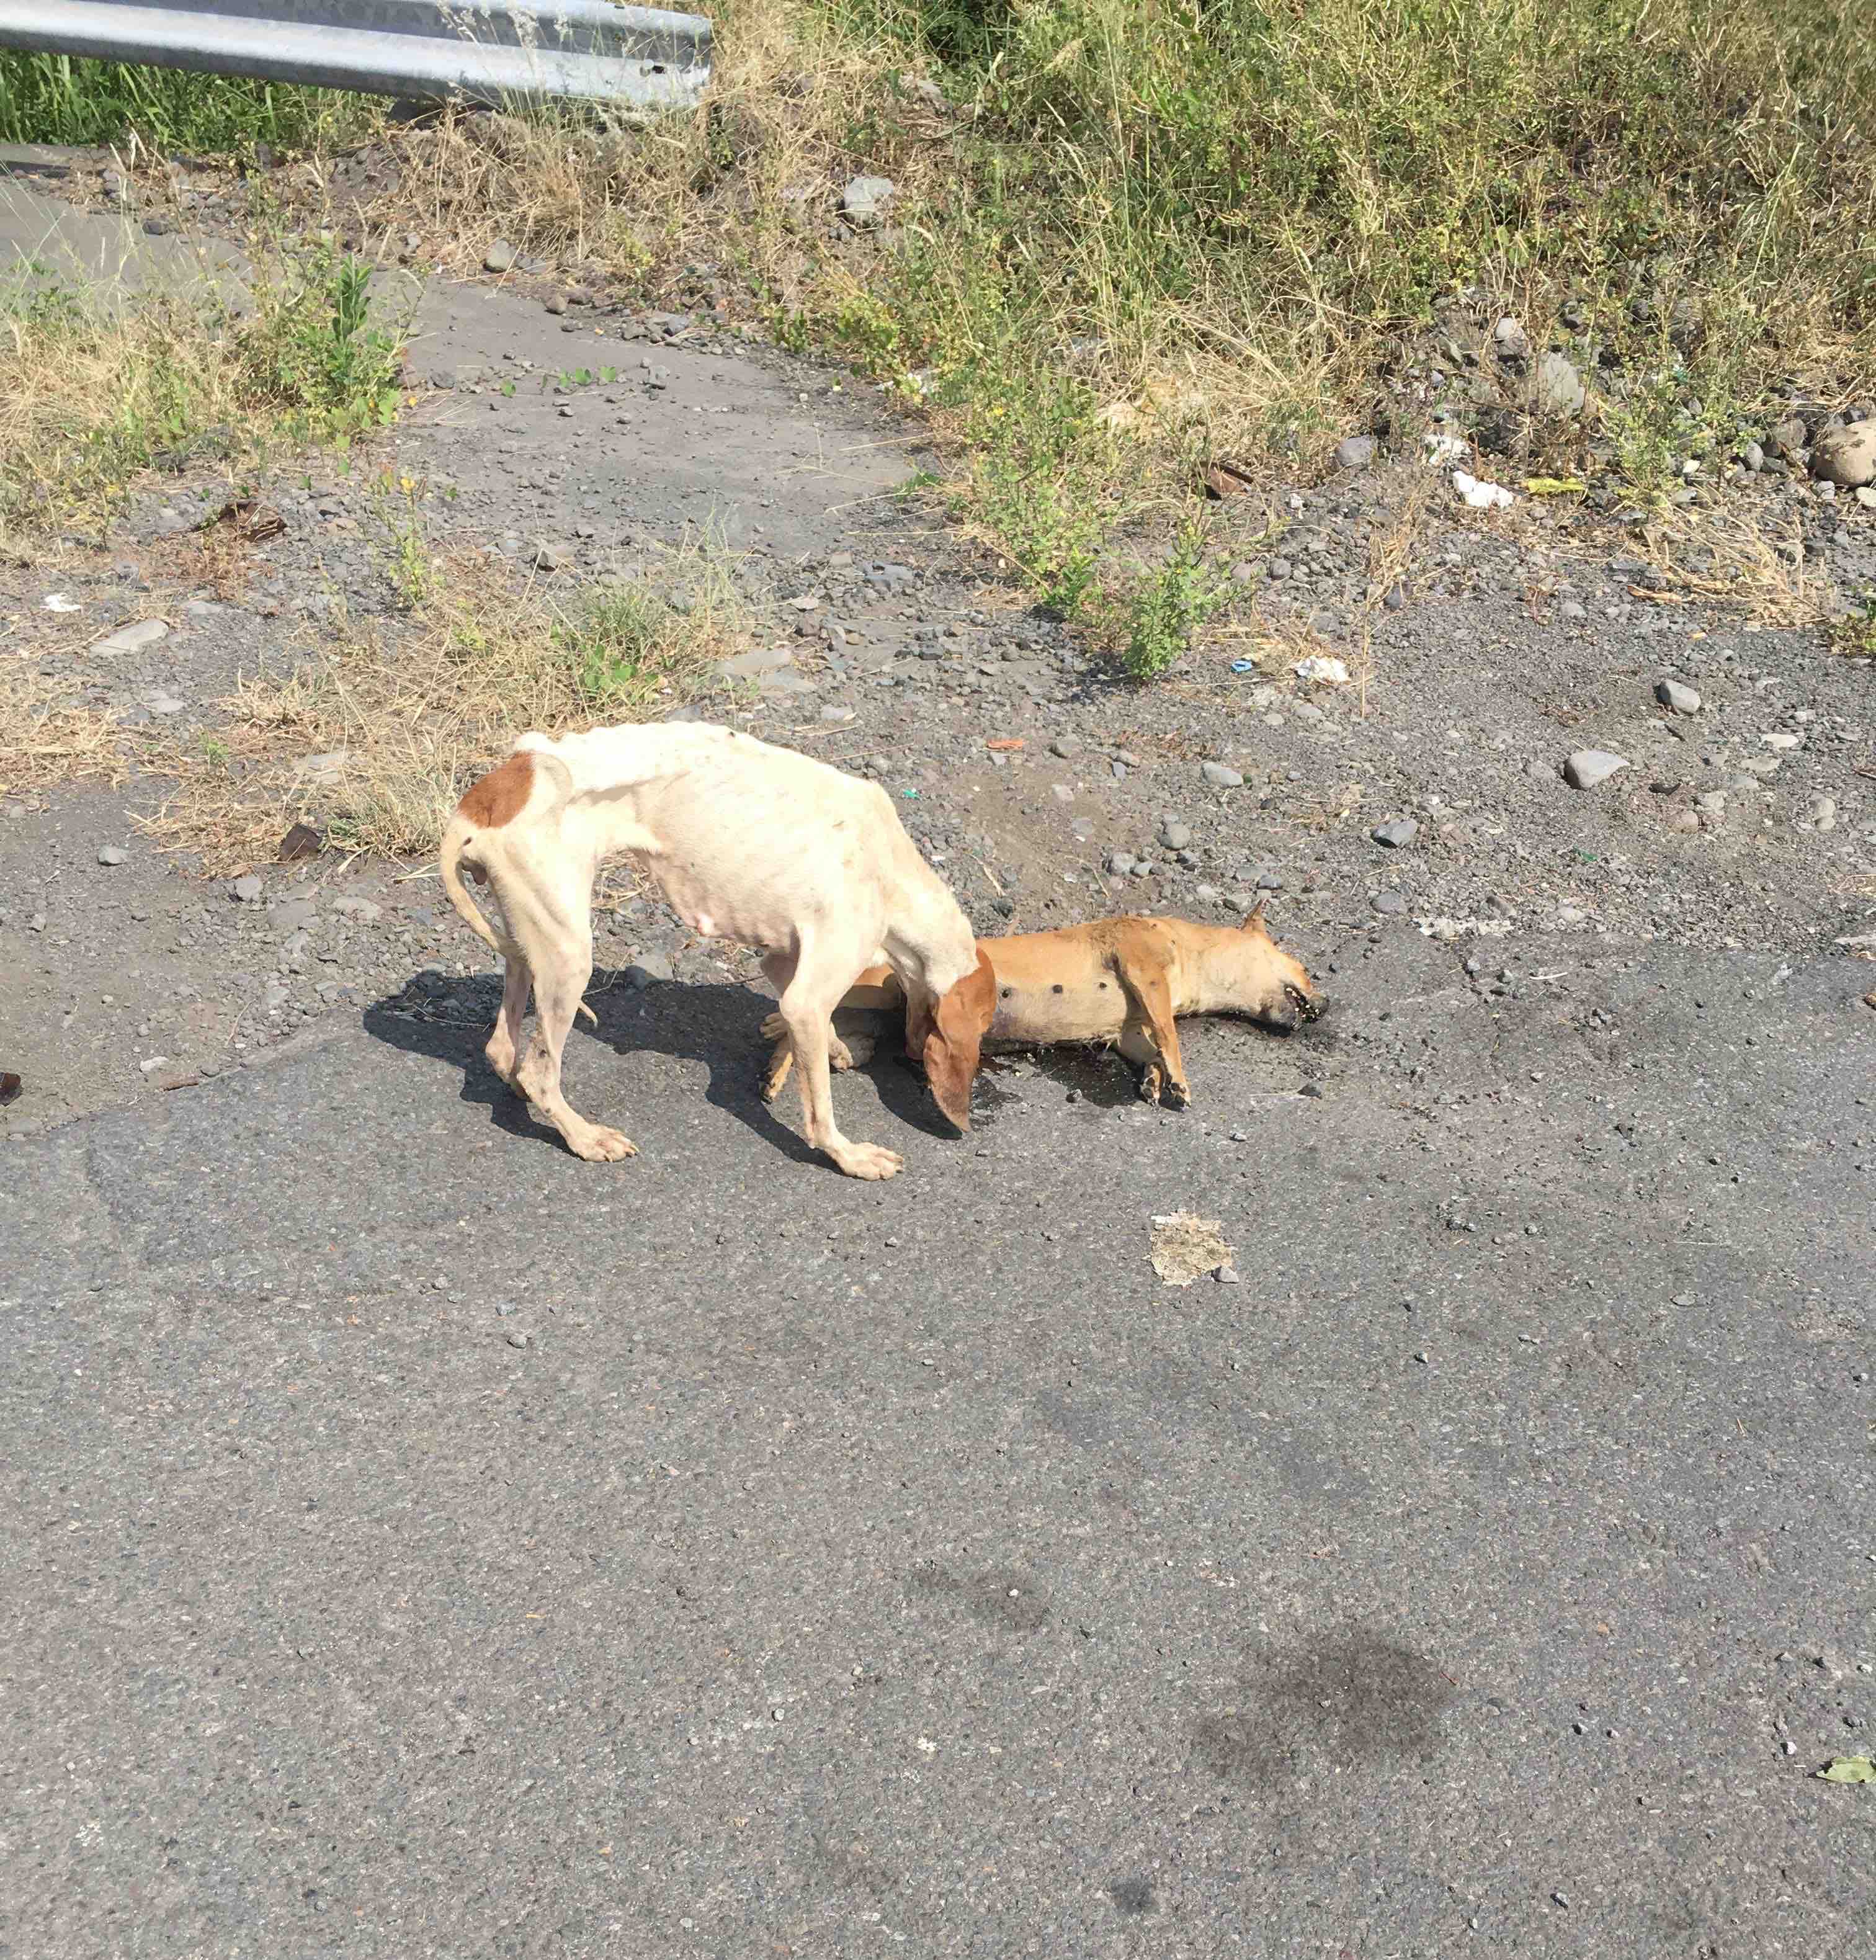 Vidéo choc de l'errance animale, une chienne se nourrit sur un cadavre